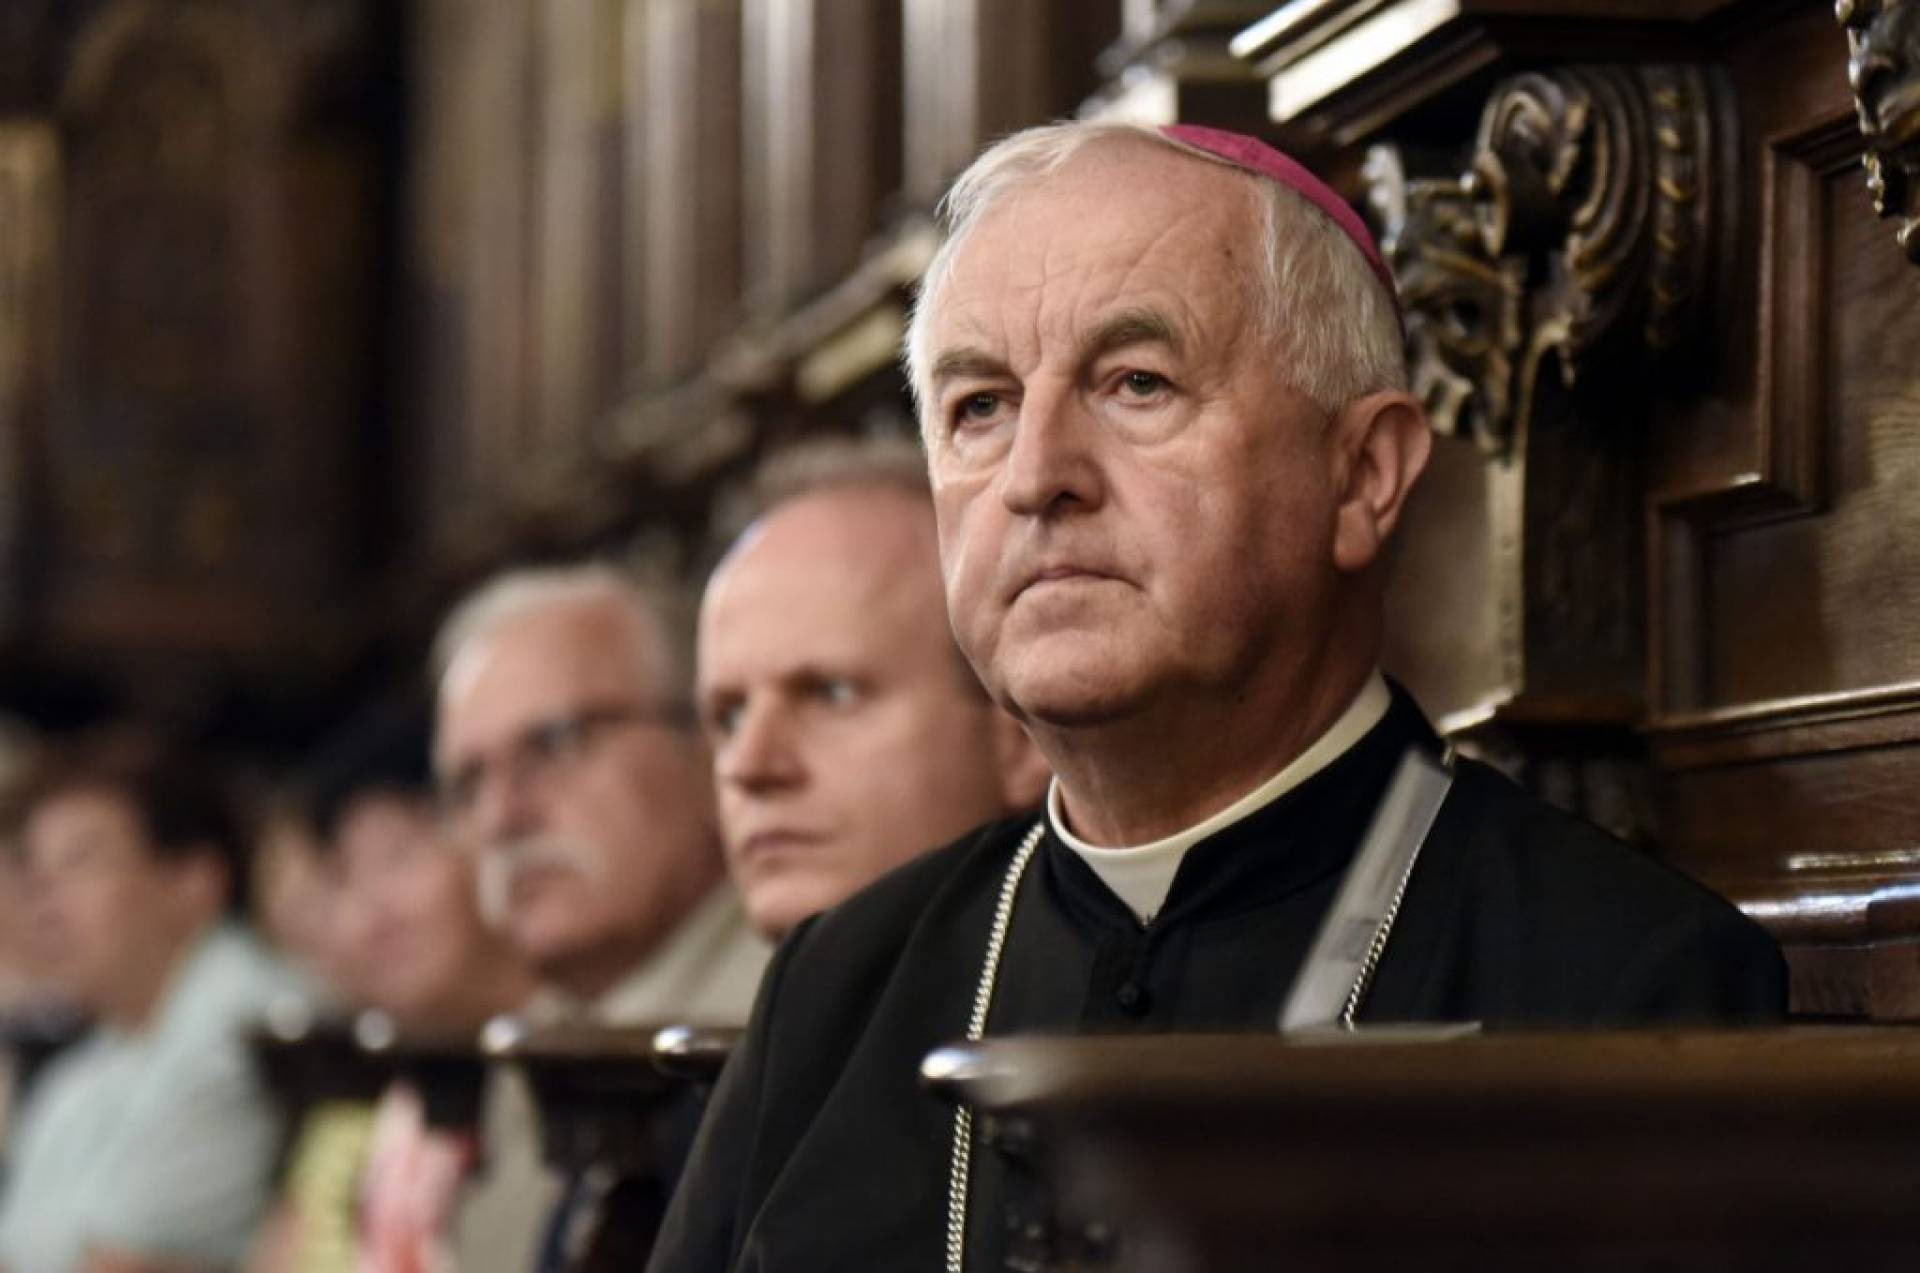 Krakowski biskup oskarżony o molestowanie, pierwszy taki kościelny proces